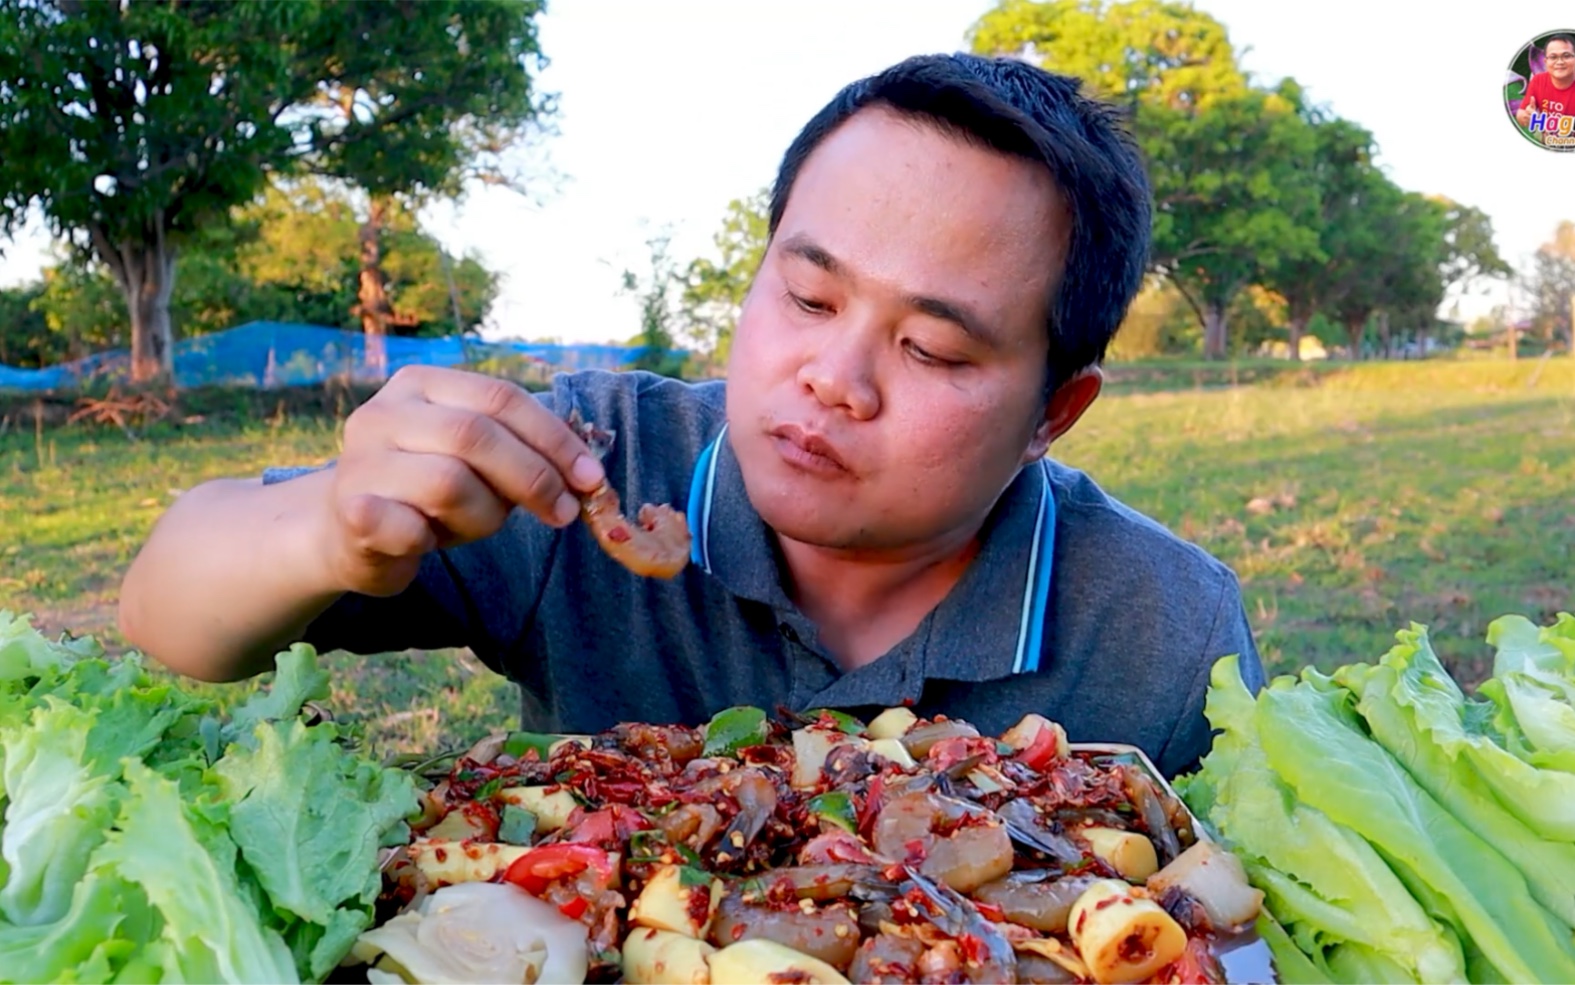 泰国嗯哼哥吃播 今天吃泰式酸辣虾 酸辣鲜甜的虾肉和酸菜 生菜 在嘴里产生的味觉碰撞 想想都好满足